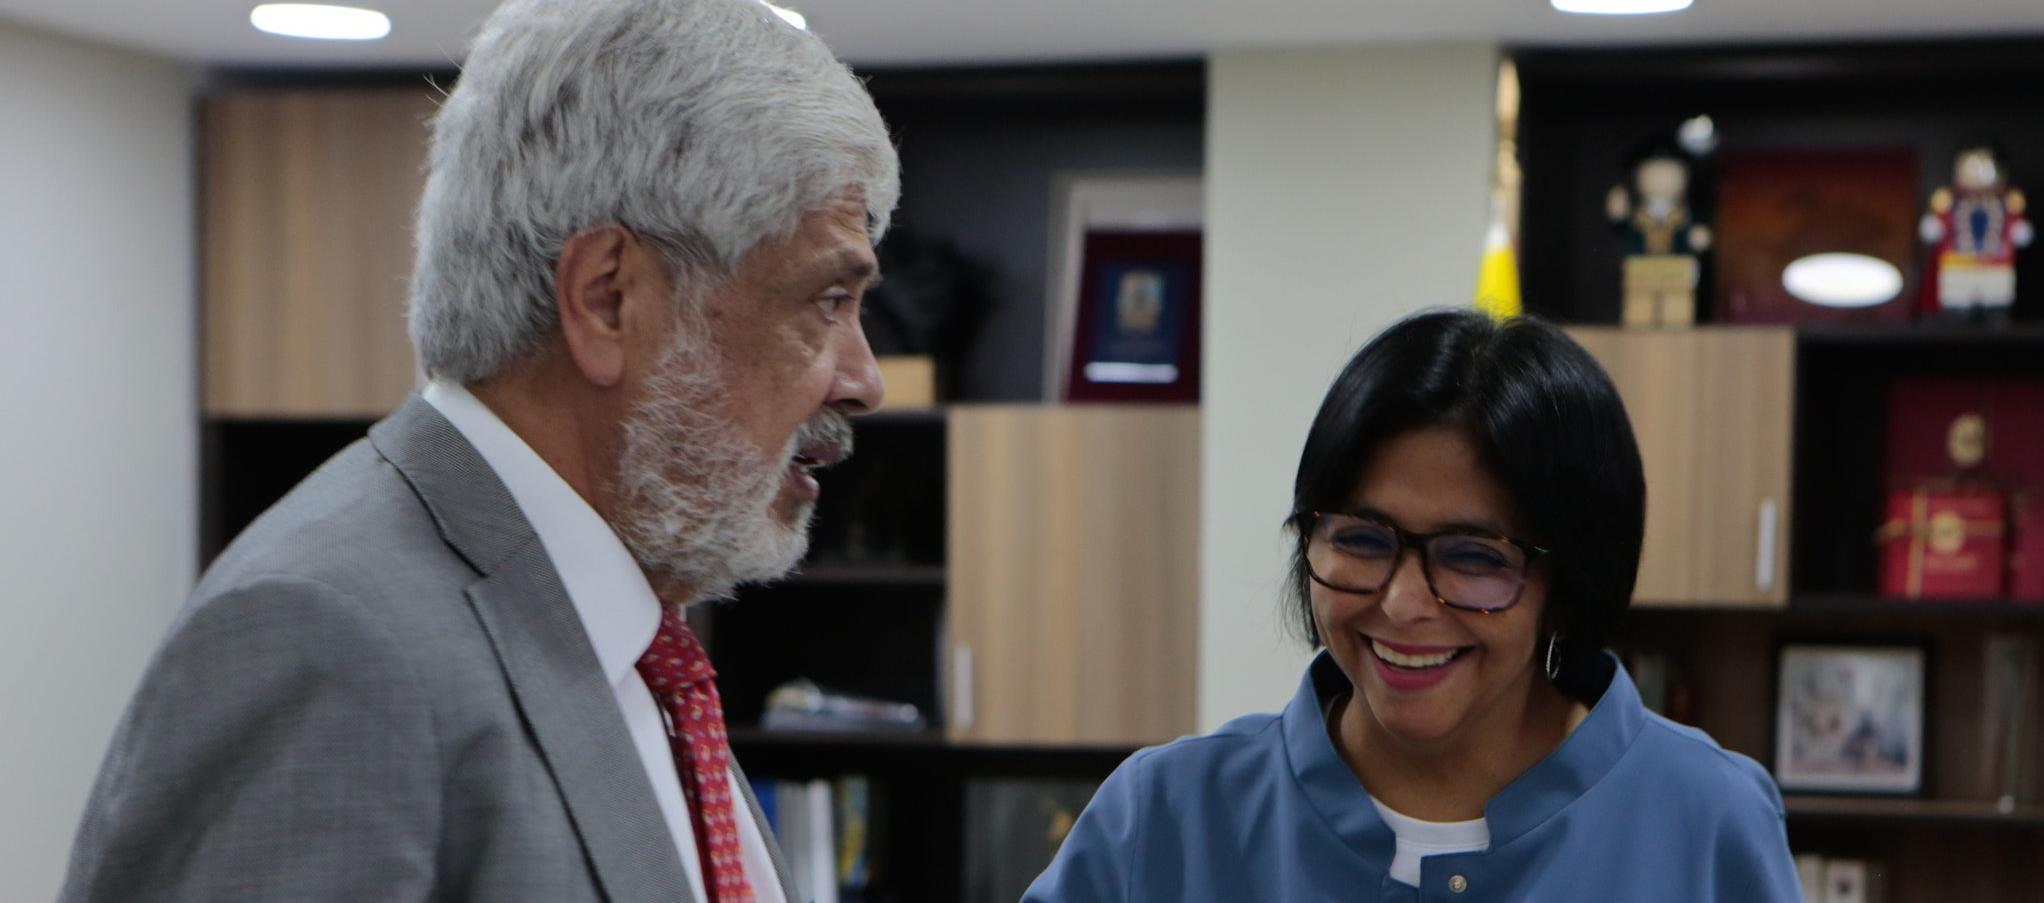 La vicepresidenta de Venezuela, Delcy Rodríguez, sostuvo una reunión de trabajo con Germán Umaña, ministro de Comercio Exterior de Colombia